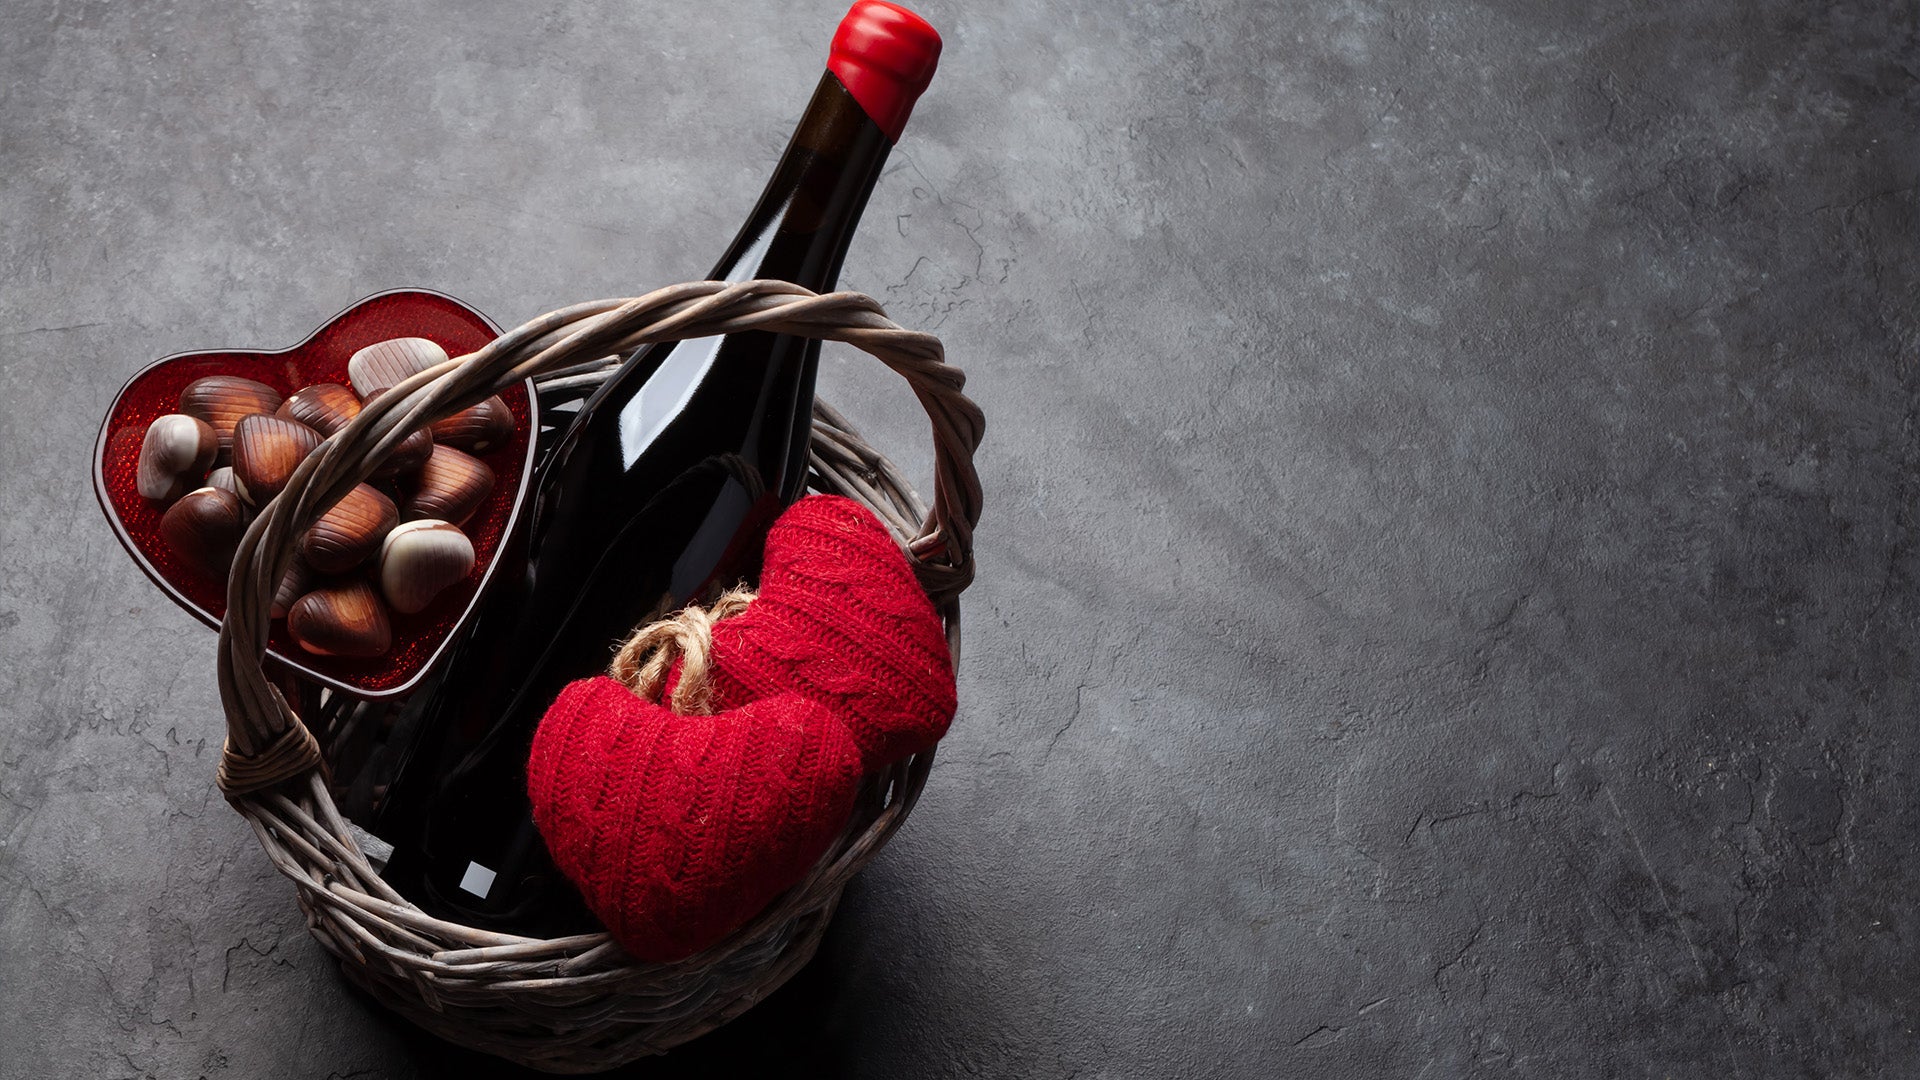 Pralinen und Wein: Eine perfekte Paarung - KILIAN SCHOEN CHOCOLATES EST. 2019